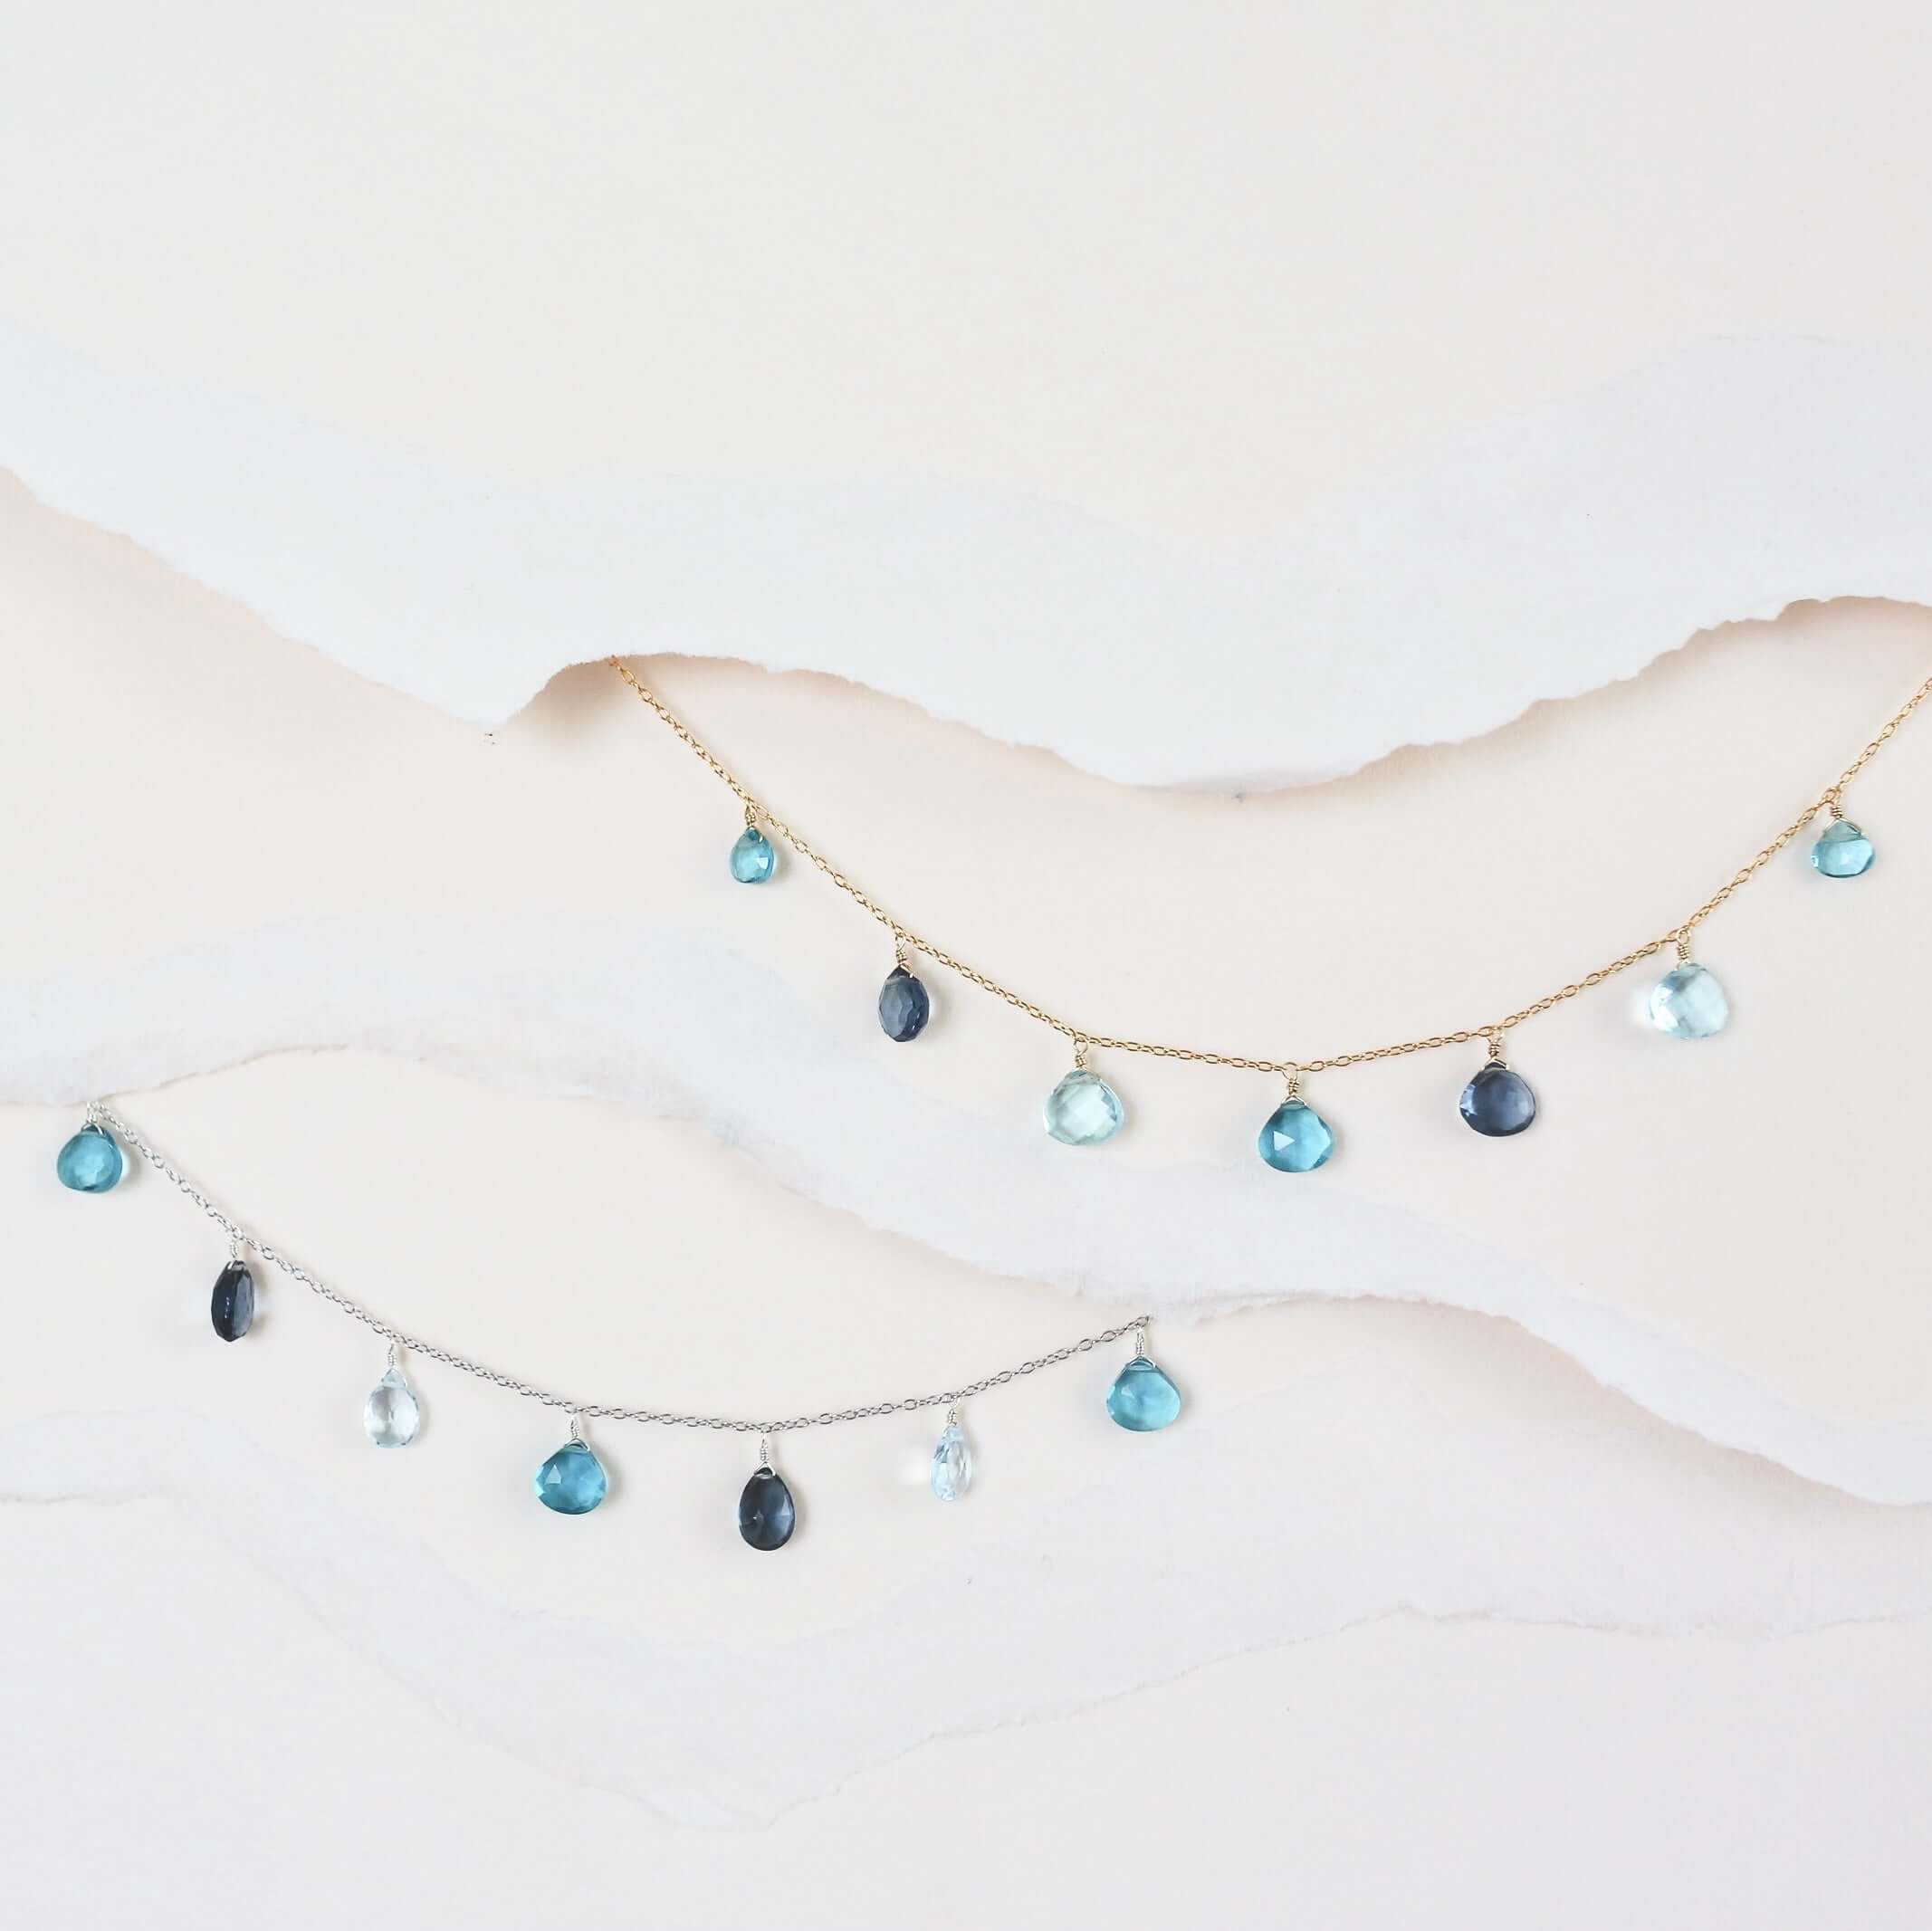 Delicate Aquamarine, Iolite, and Aqua Blue Quartz Necklaces